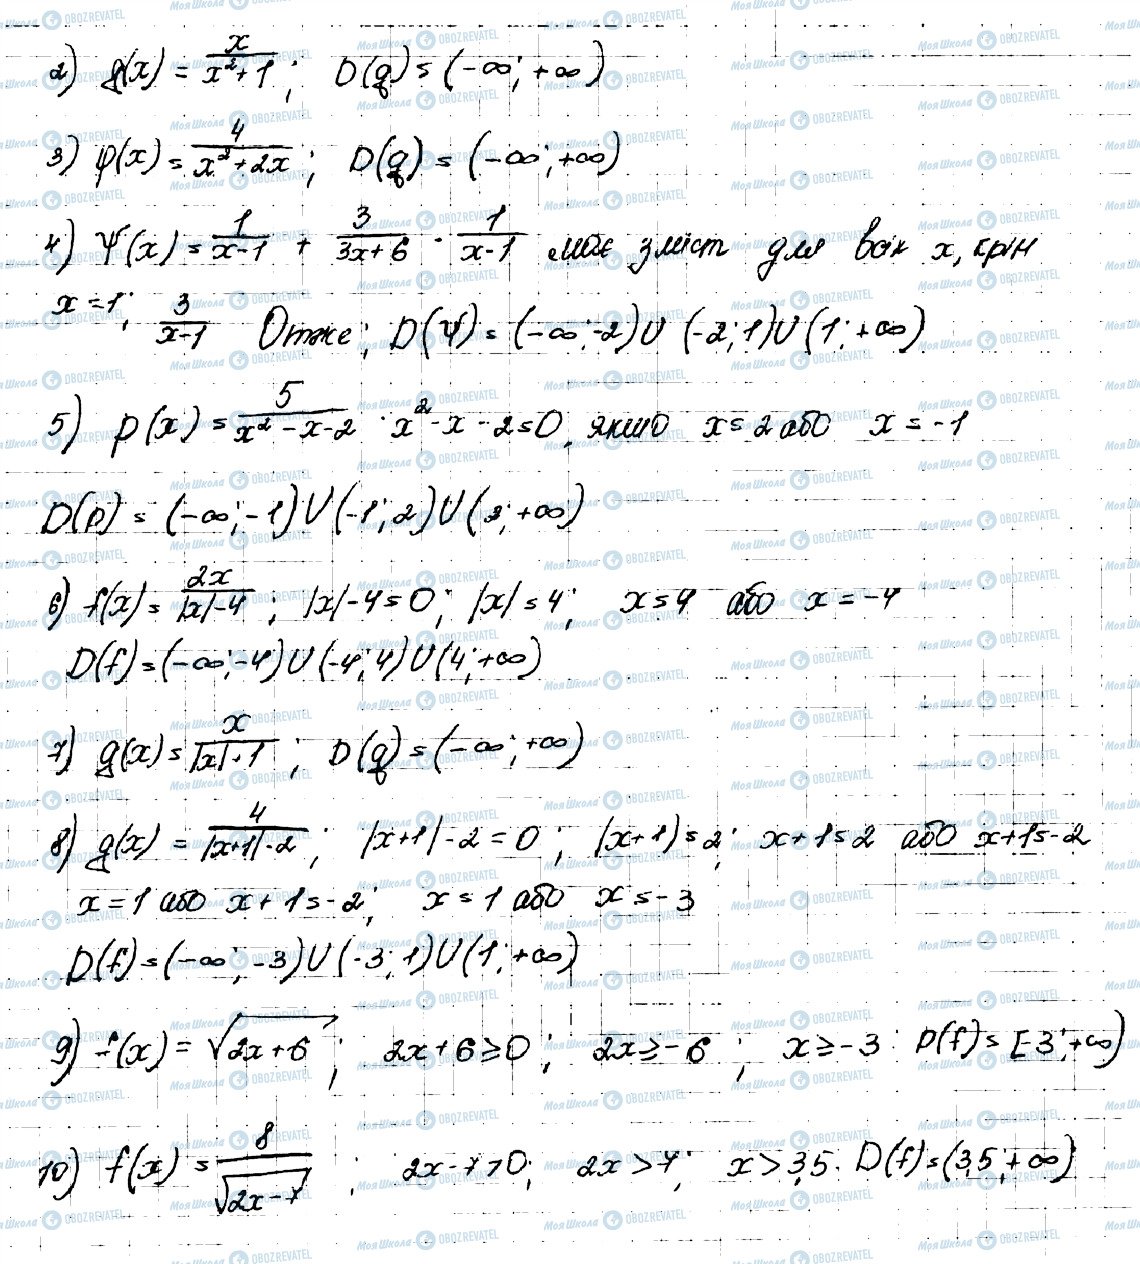 ГДЗ Алгебра 9 класс страница 345